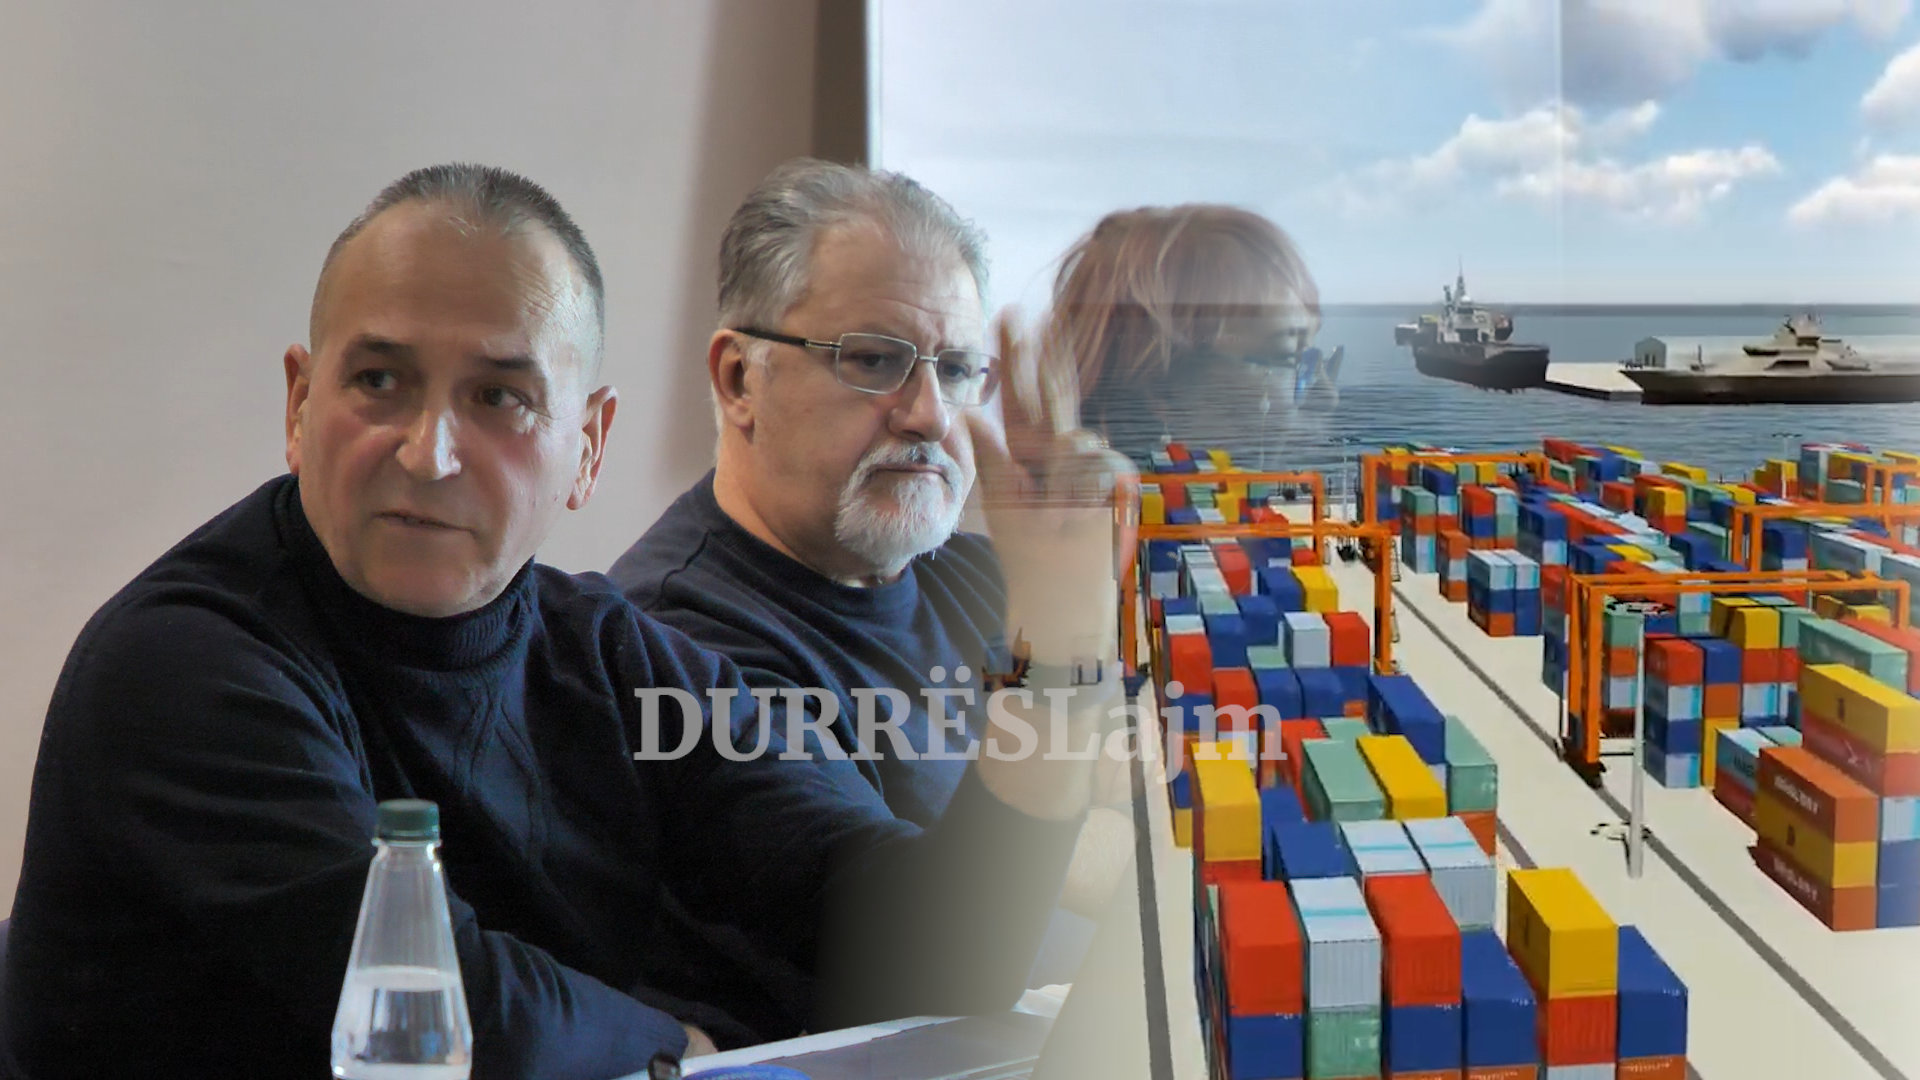 Porti i ri tregtar i Durrësit, Metalla: Shifrat janë të pabesueshme, ja pse rrezikon të mos ndërtohet (VIDEO)